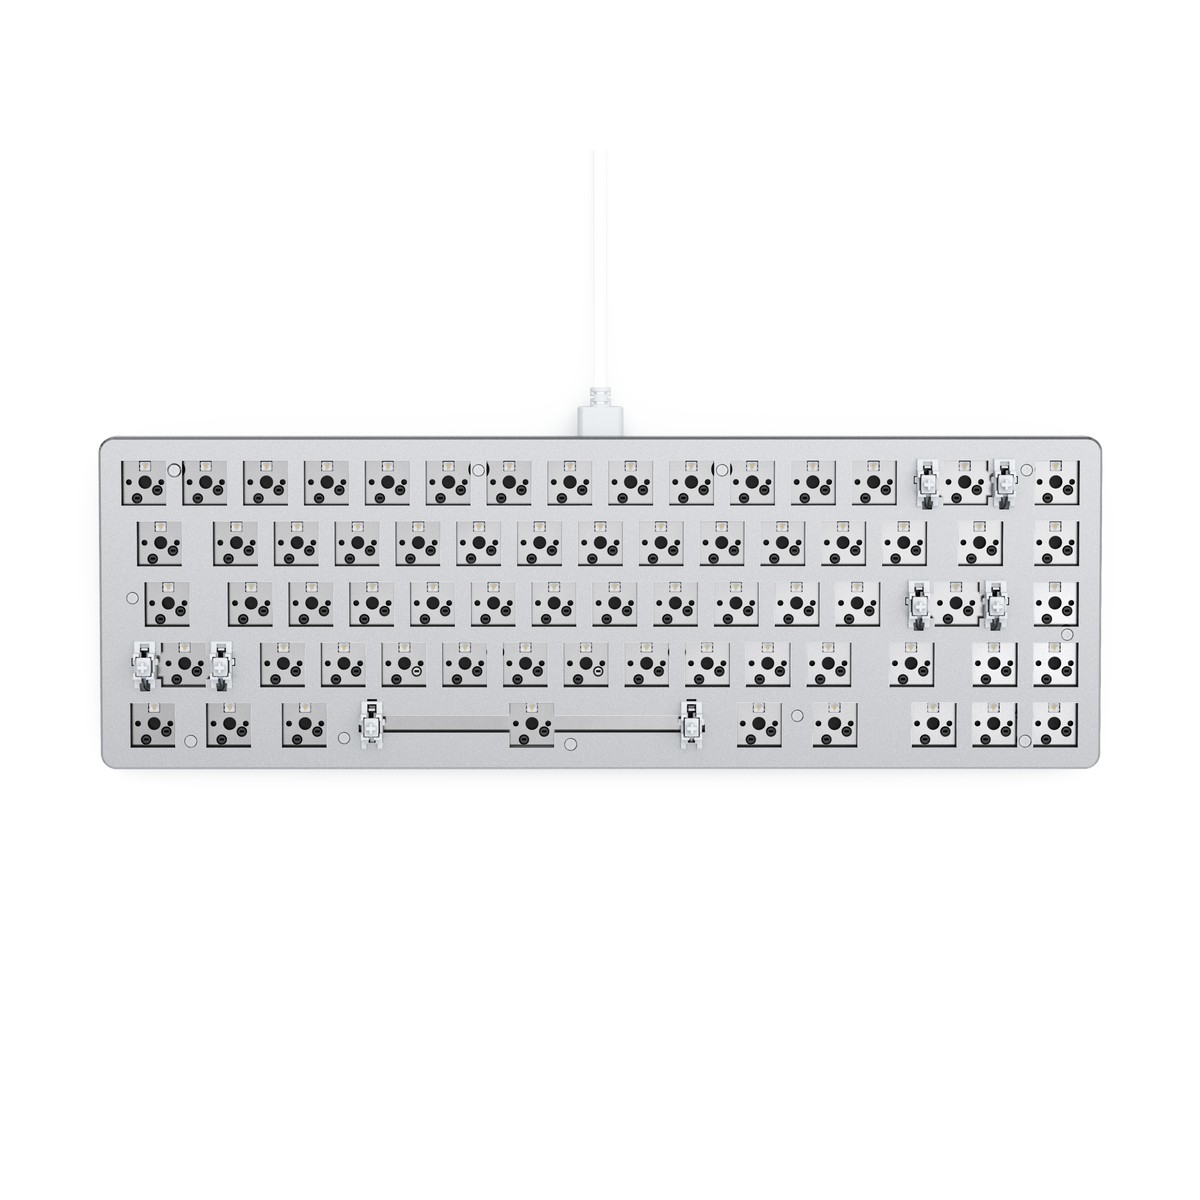 Glorious - Glorious GMMK 2 65% Keyboard Barebone ANSI-Layout - White